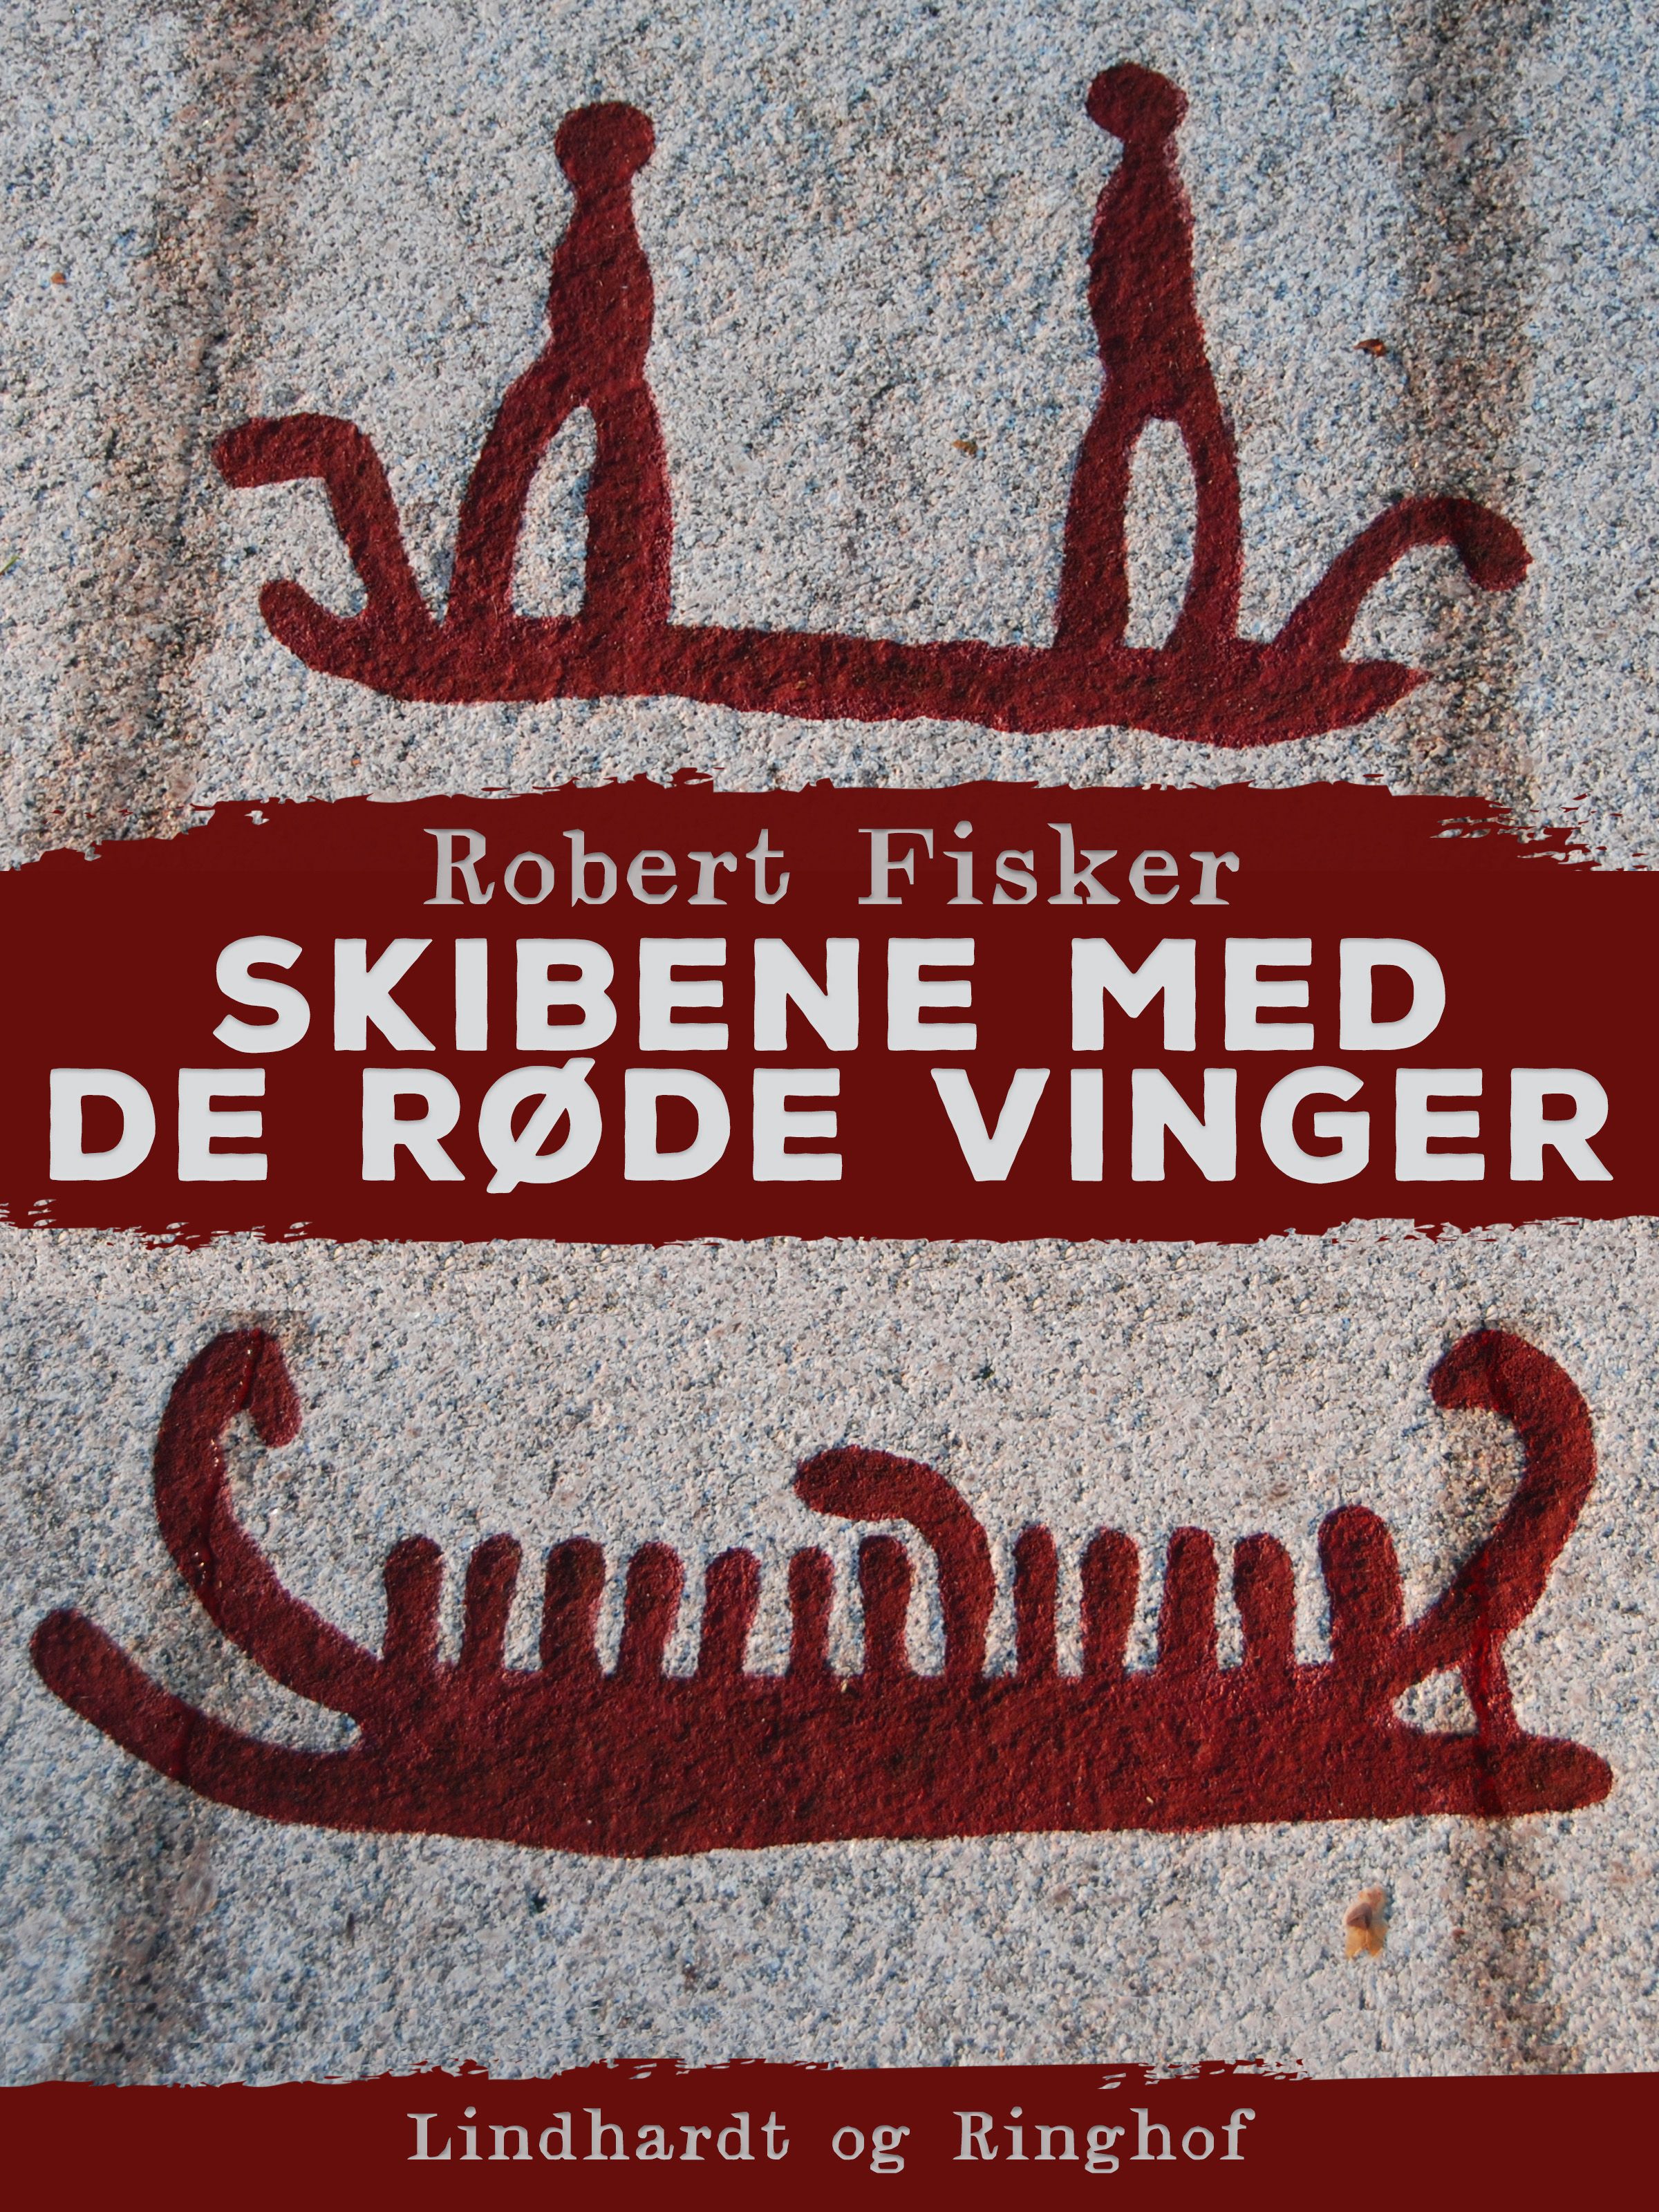 Skibene med de røde vinger, ljudbok av Robert Fisker